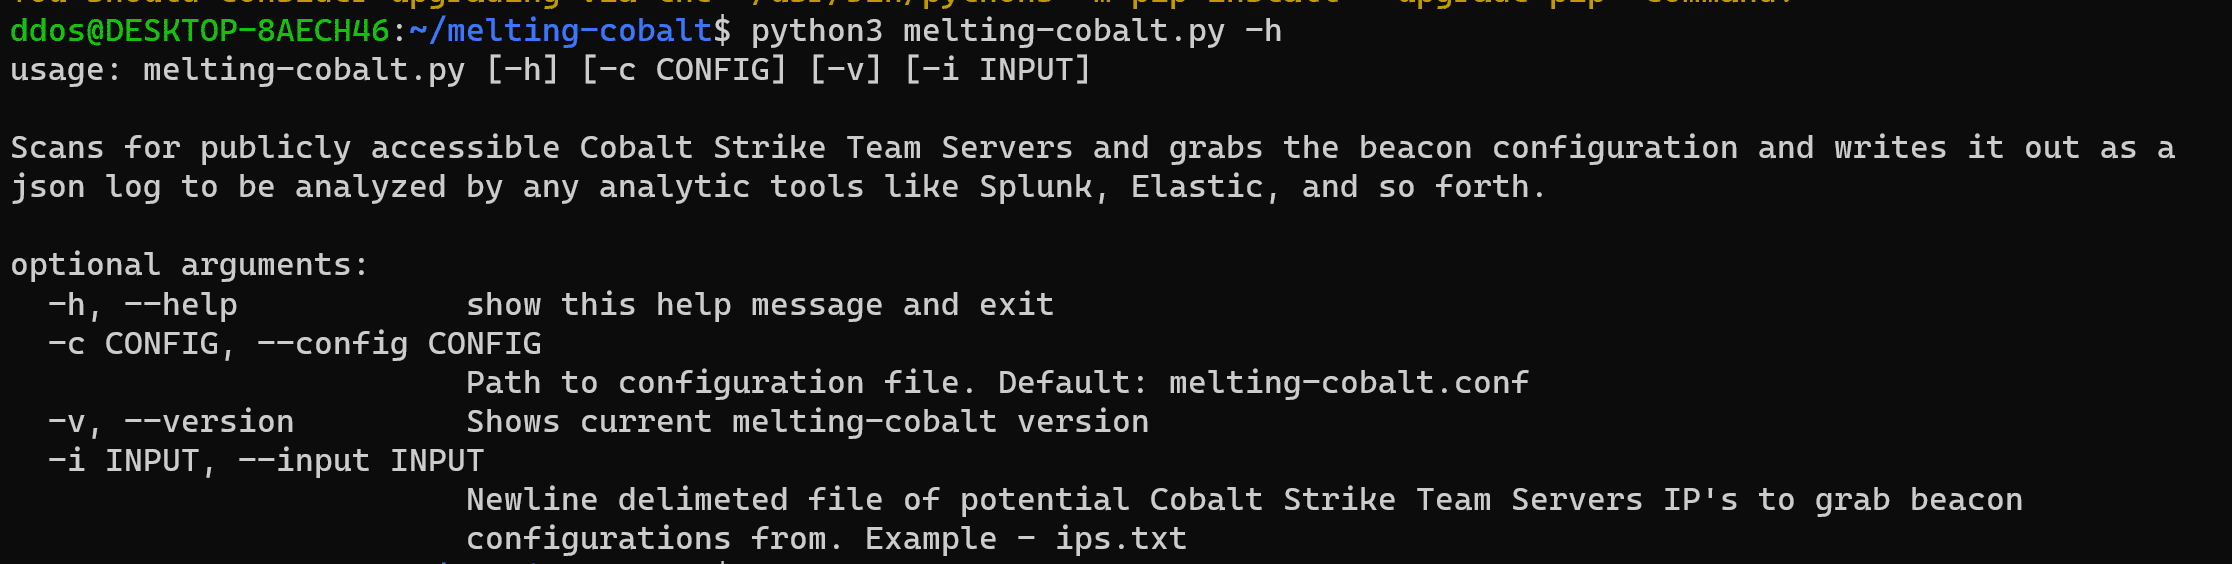 Cobalt Strike Scanner